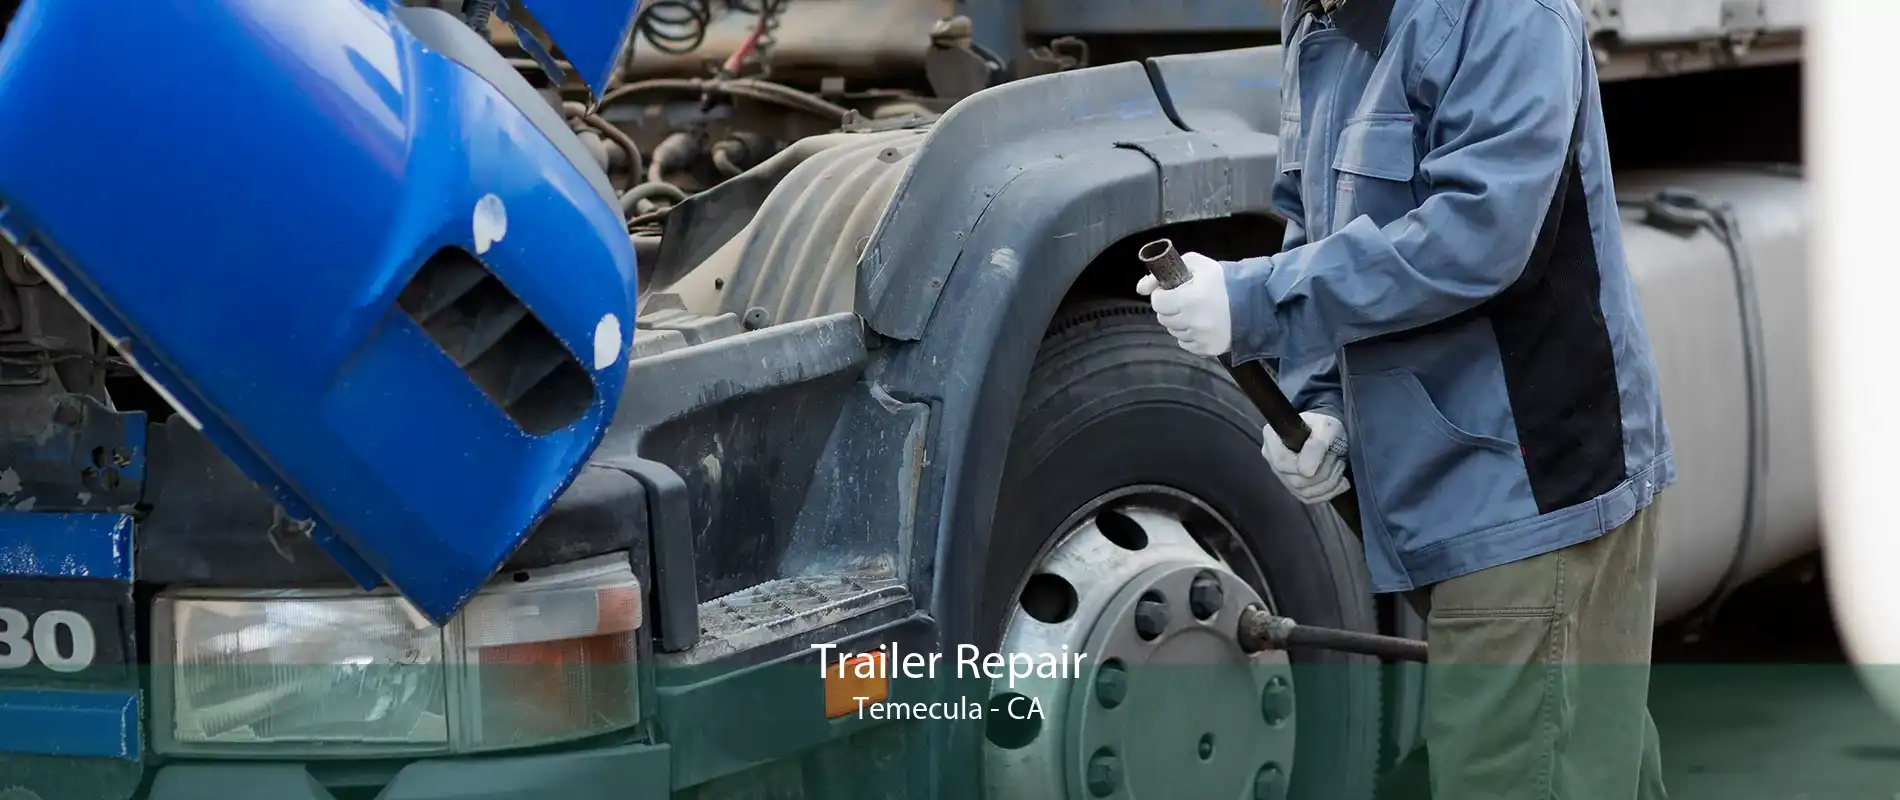 Trailer Repair Temecula - CA